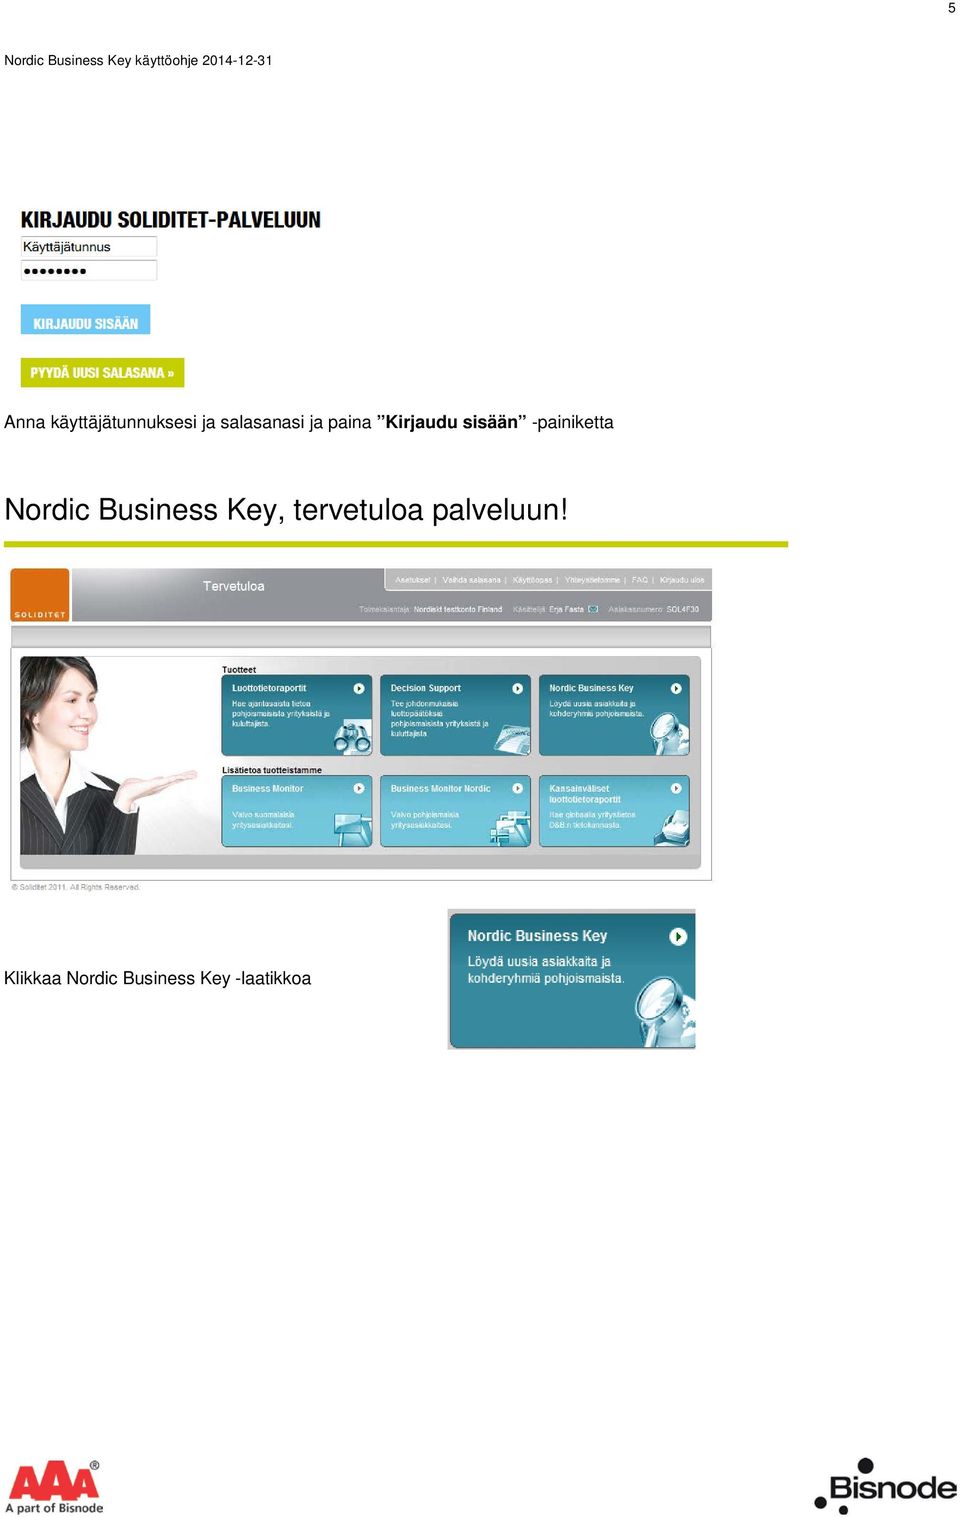 Nordic Business Key, tervetuloa